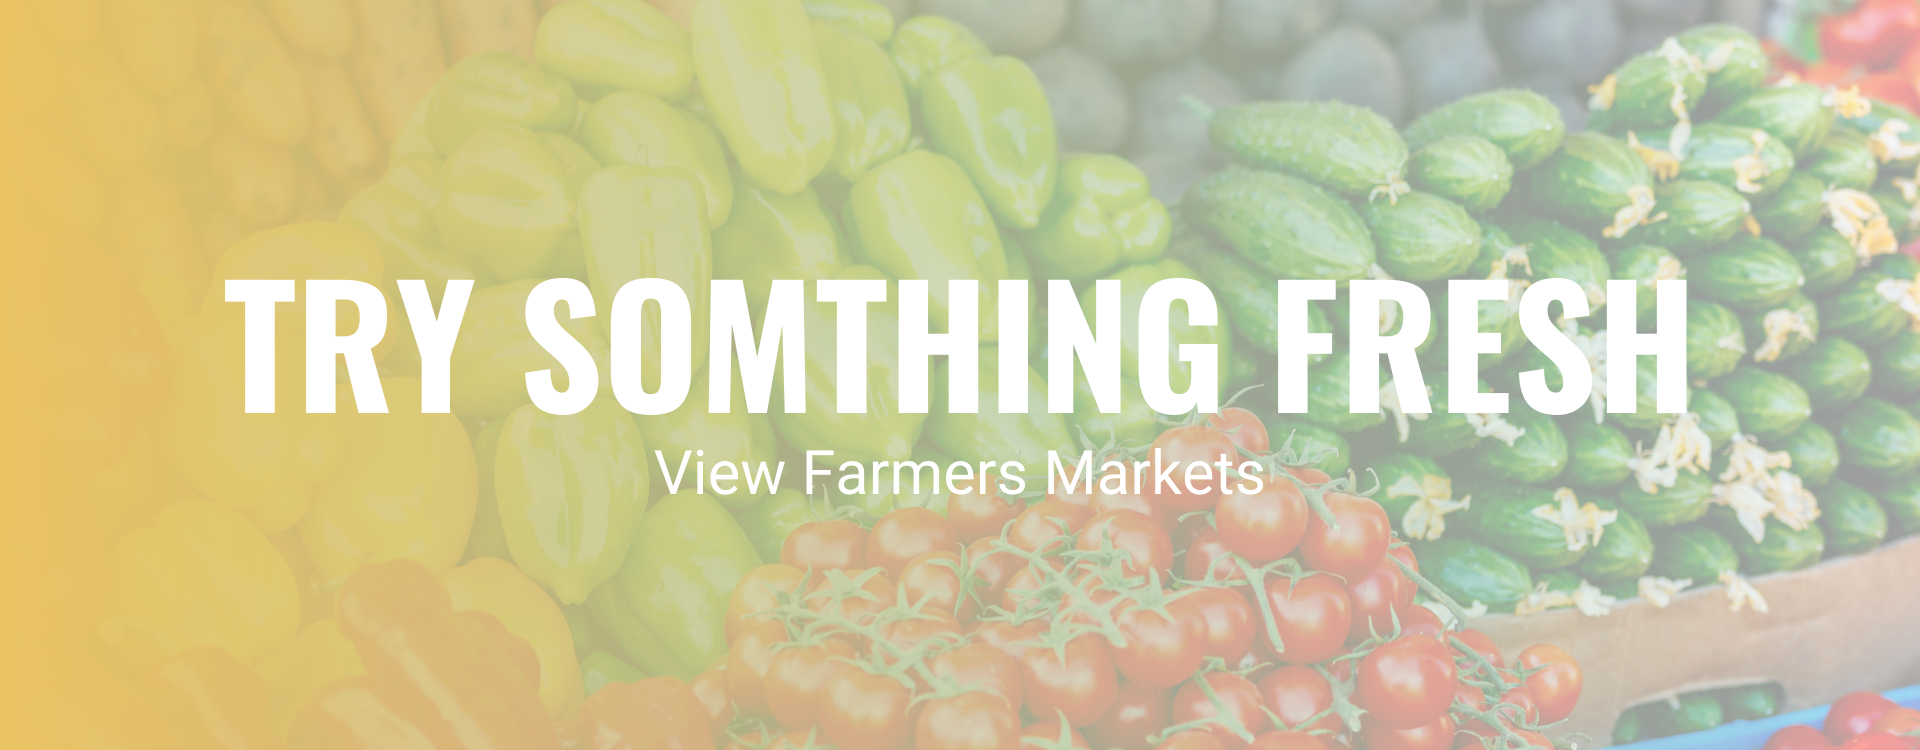 NPU Farmers Markets